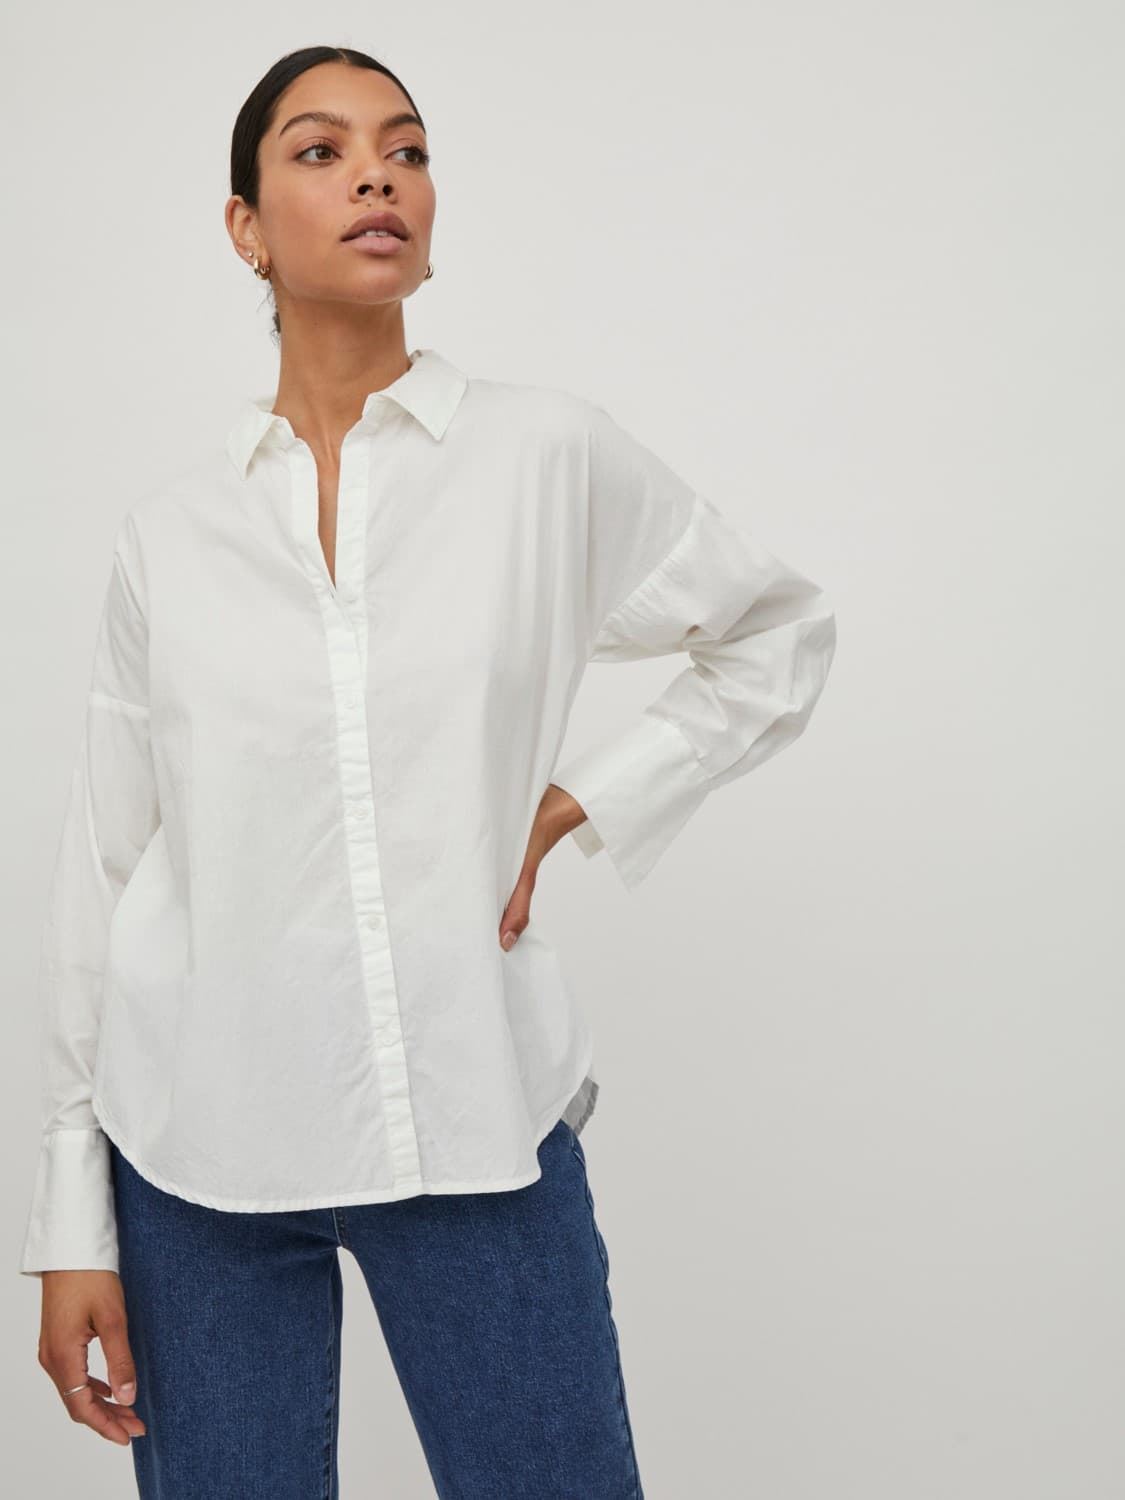 Camisa manga larga Vigamis blanca - Imagen 1